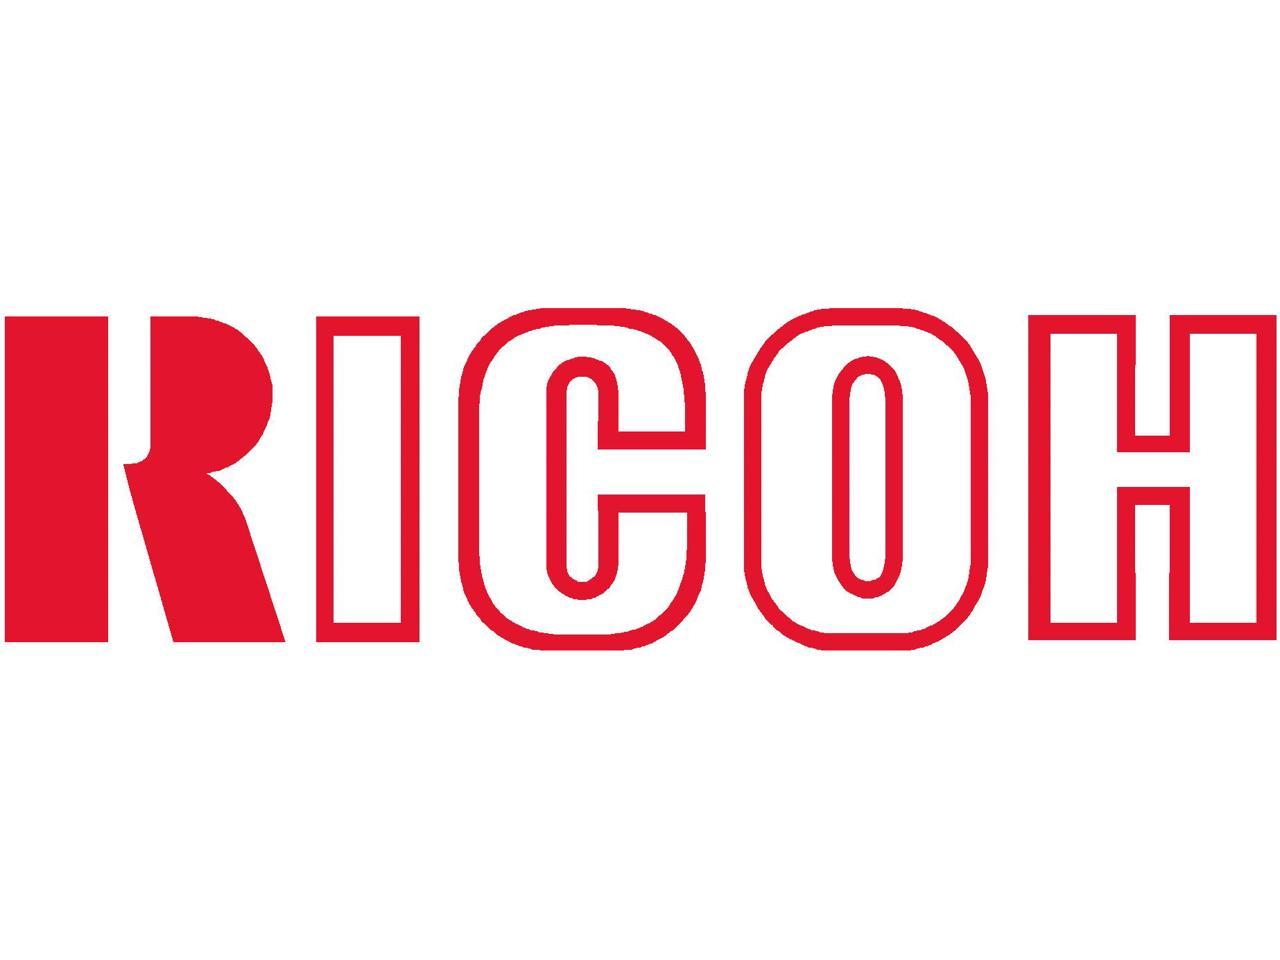 Black Toner Cartridge for Ricoh 828277 Pro 8100EX, Pro 8100S, Pro 8110S, Pro 8120S, Genuine Ricoh Brand